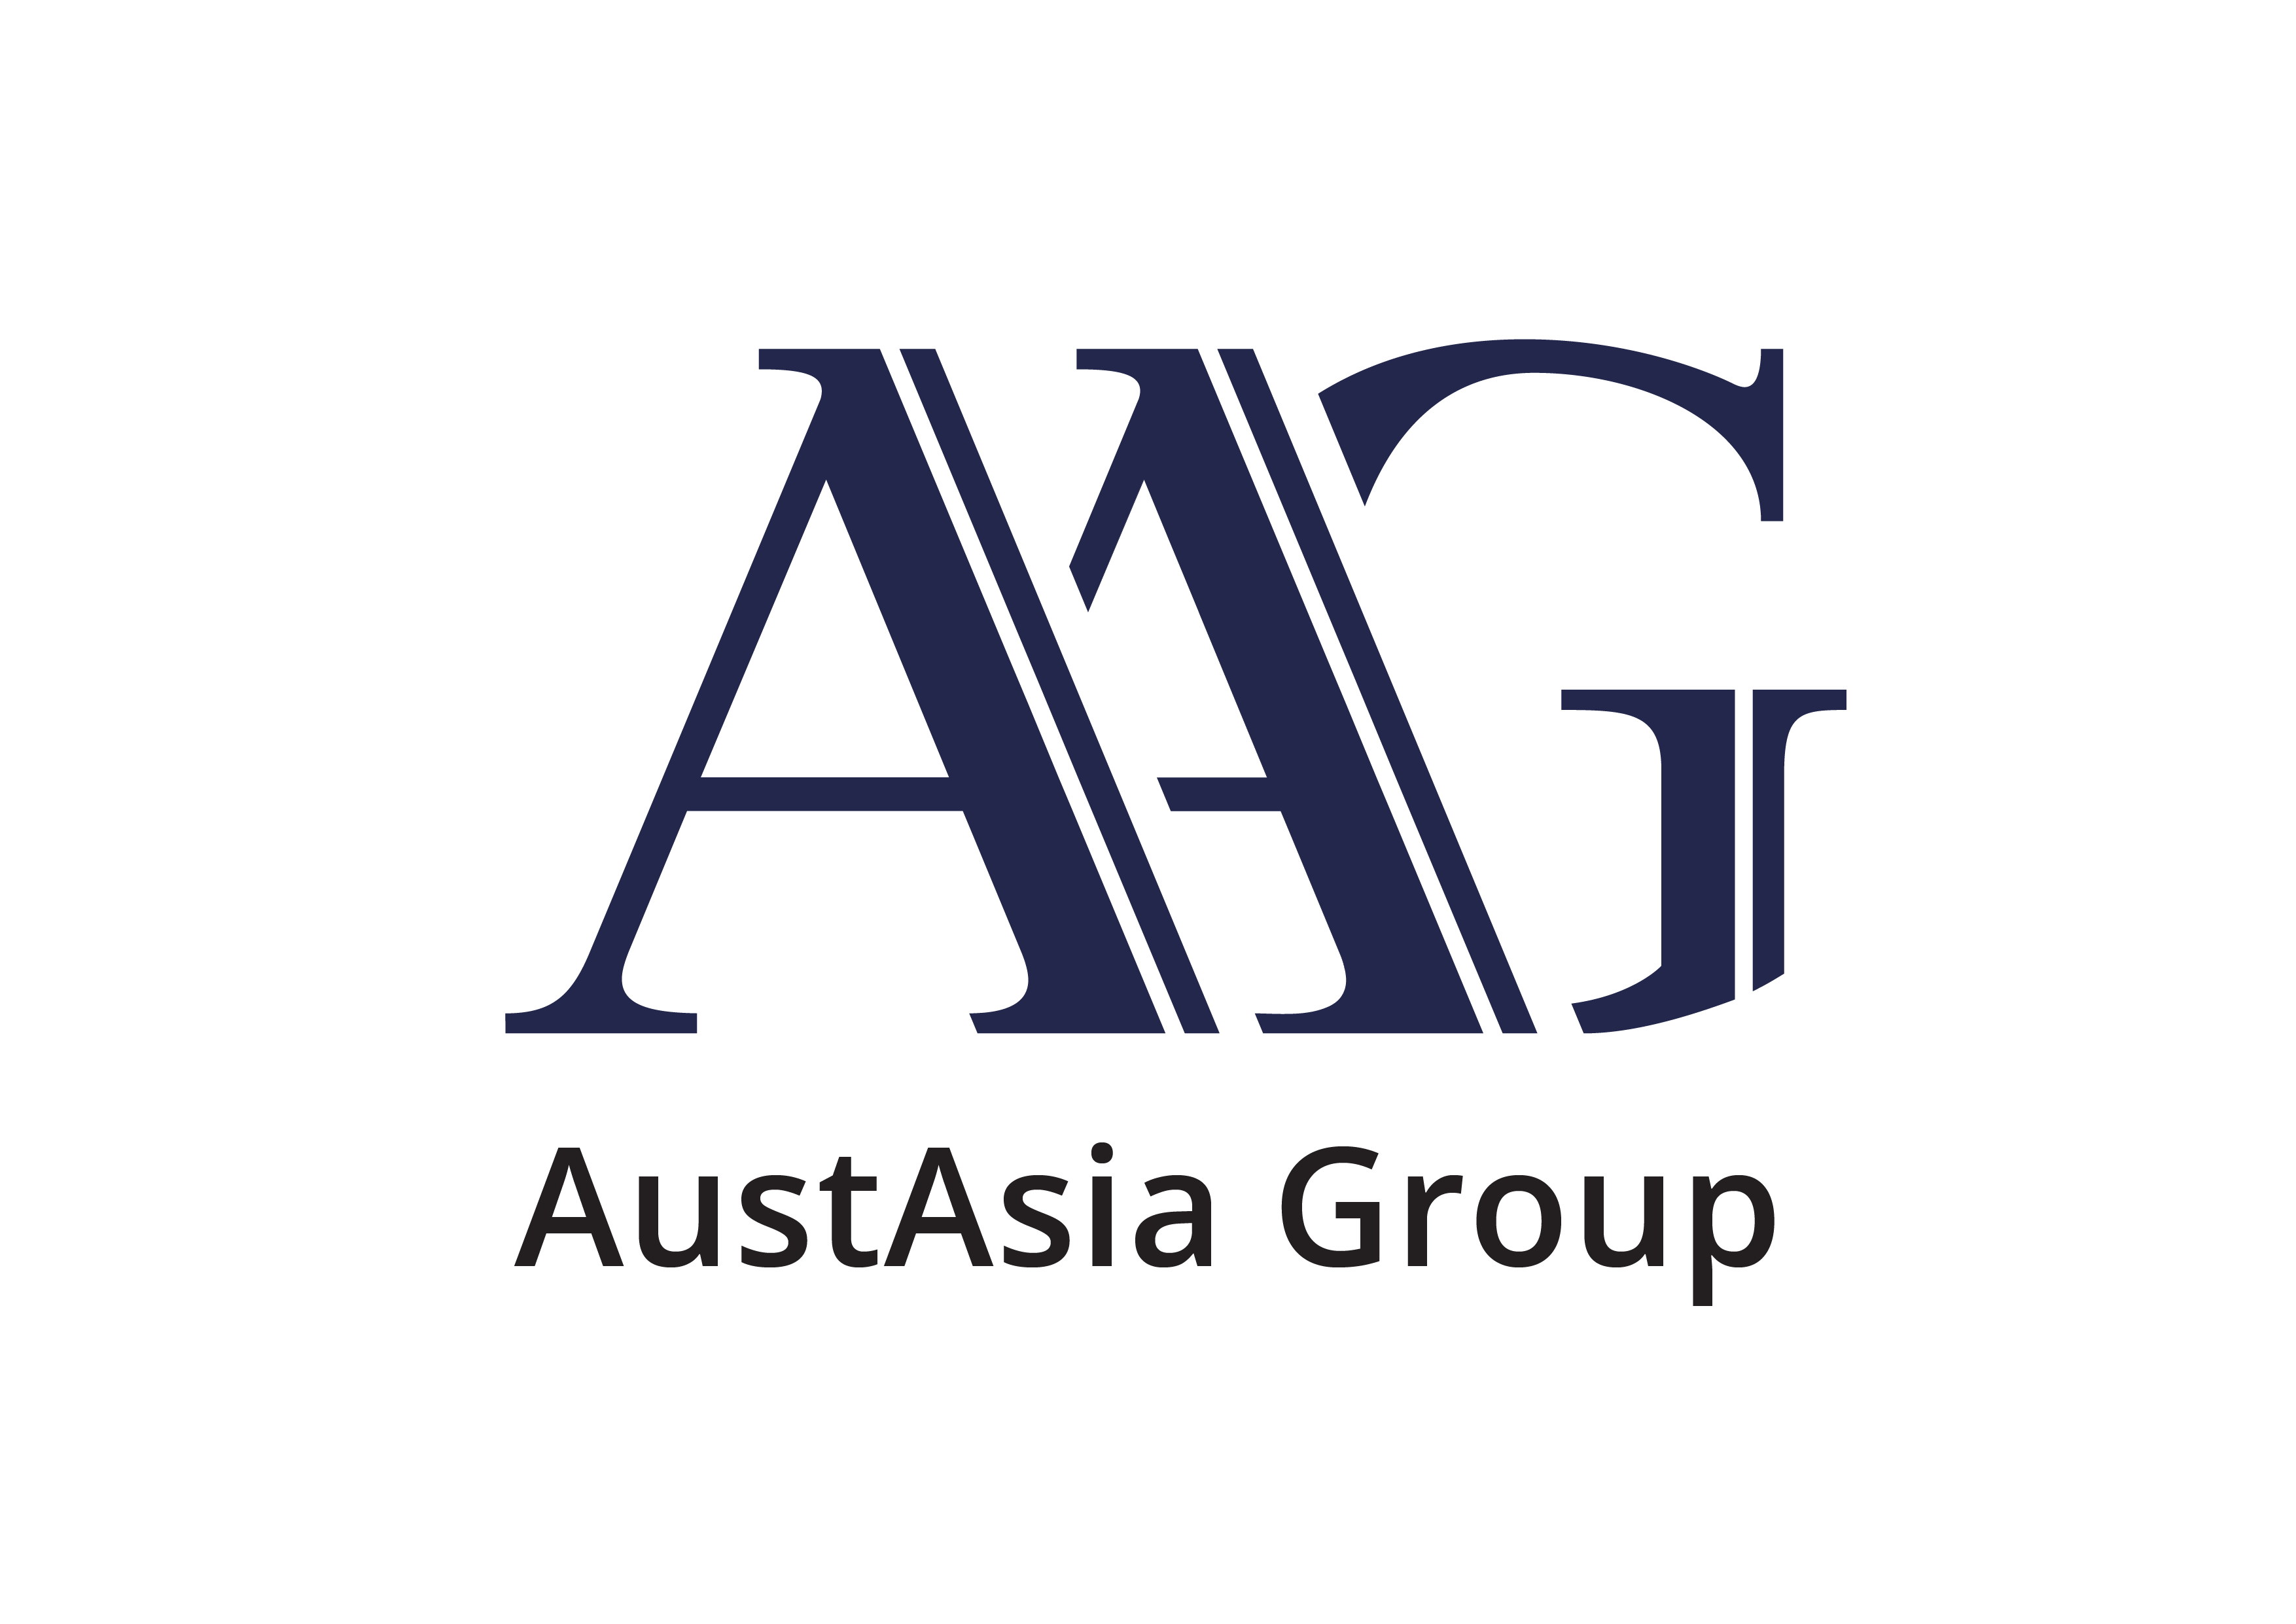 New AustAsia Group